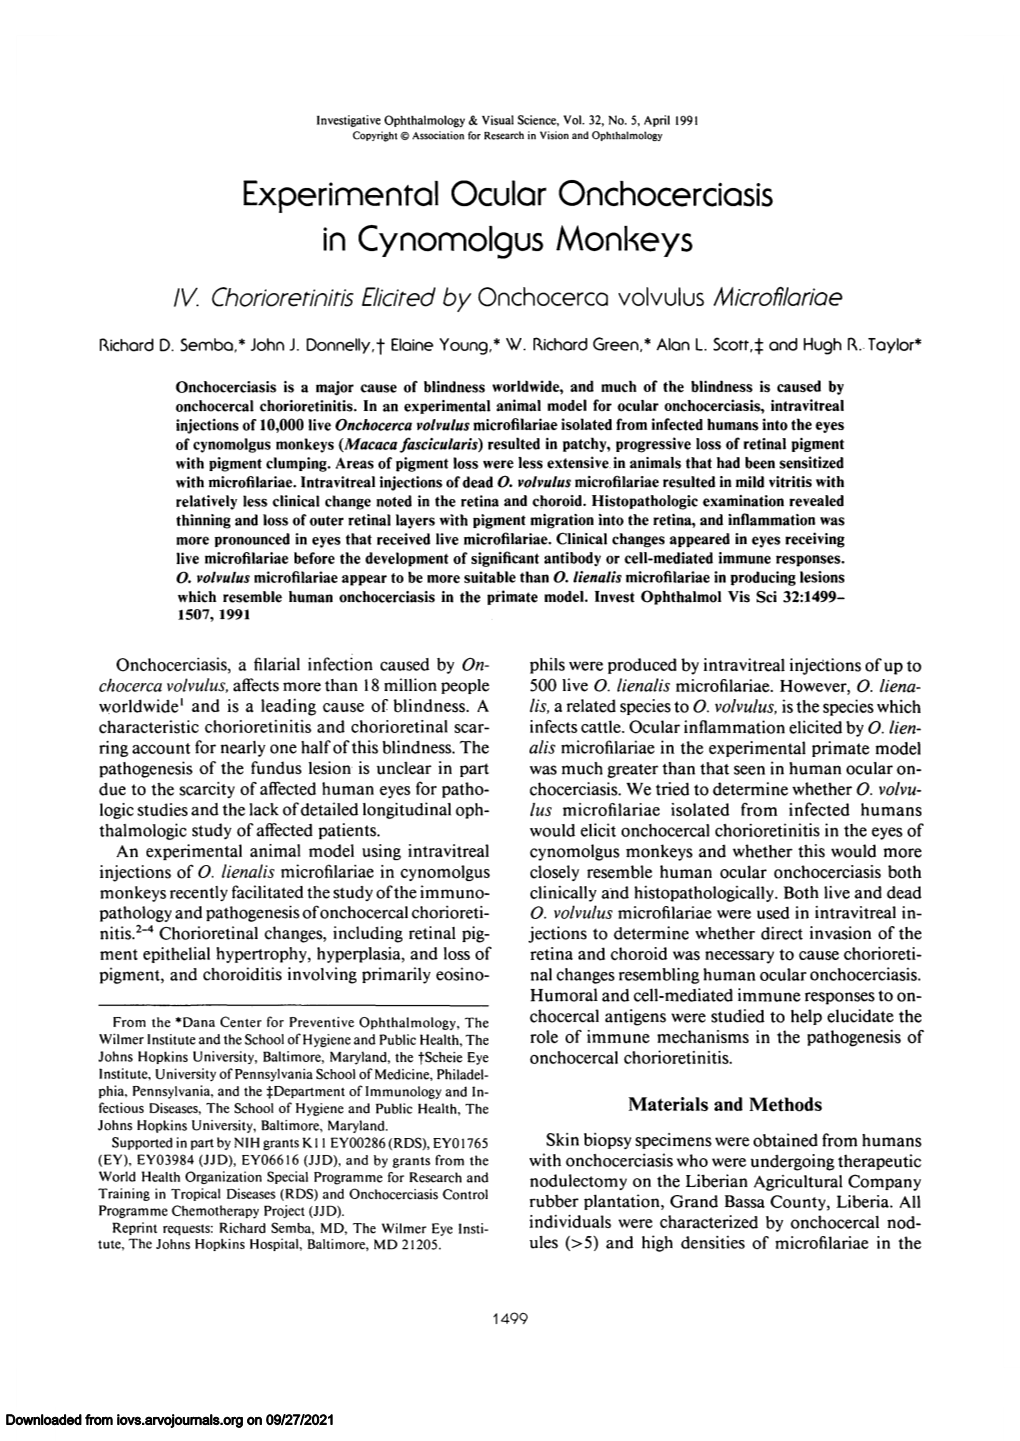 Experimental Ocular Onchocerciasis in Cynomolgus Monkeys